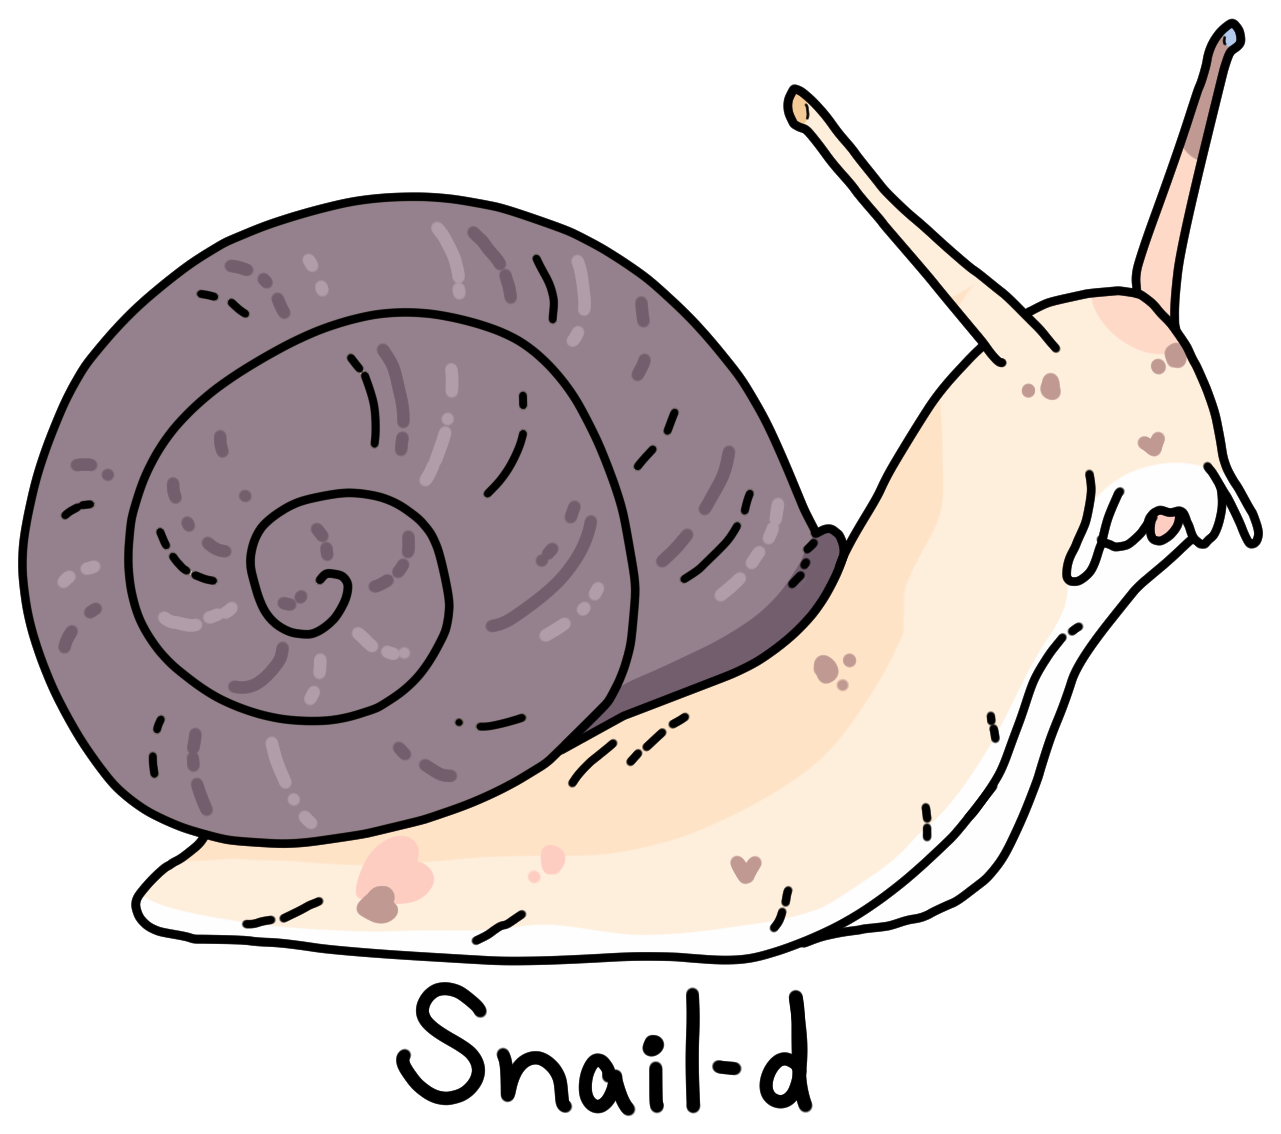 20-11-21-alyx-snail-d-LILYFIE